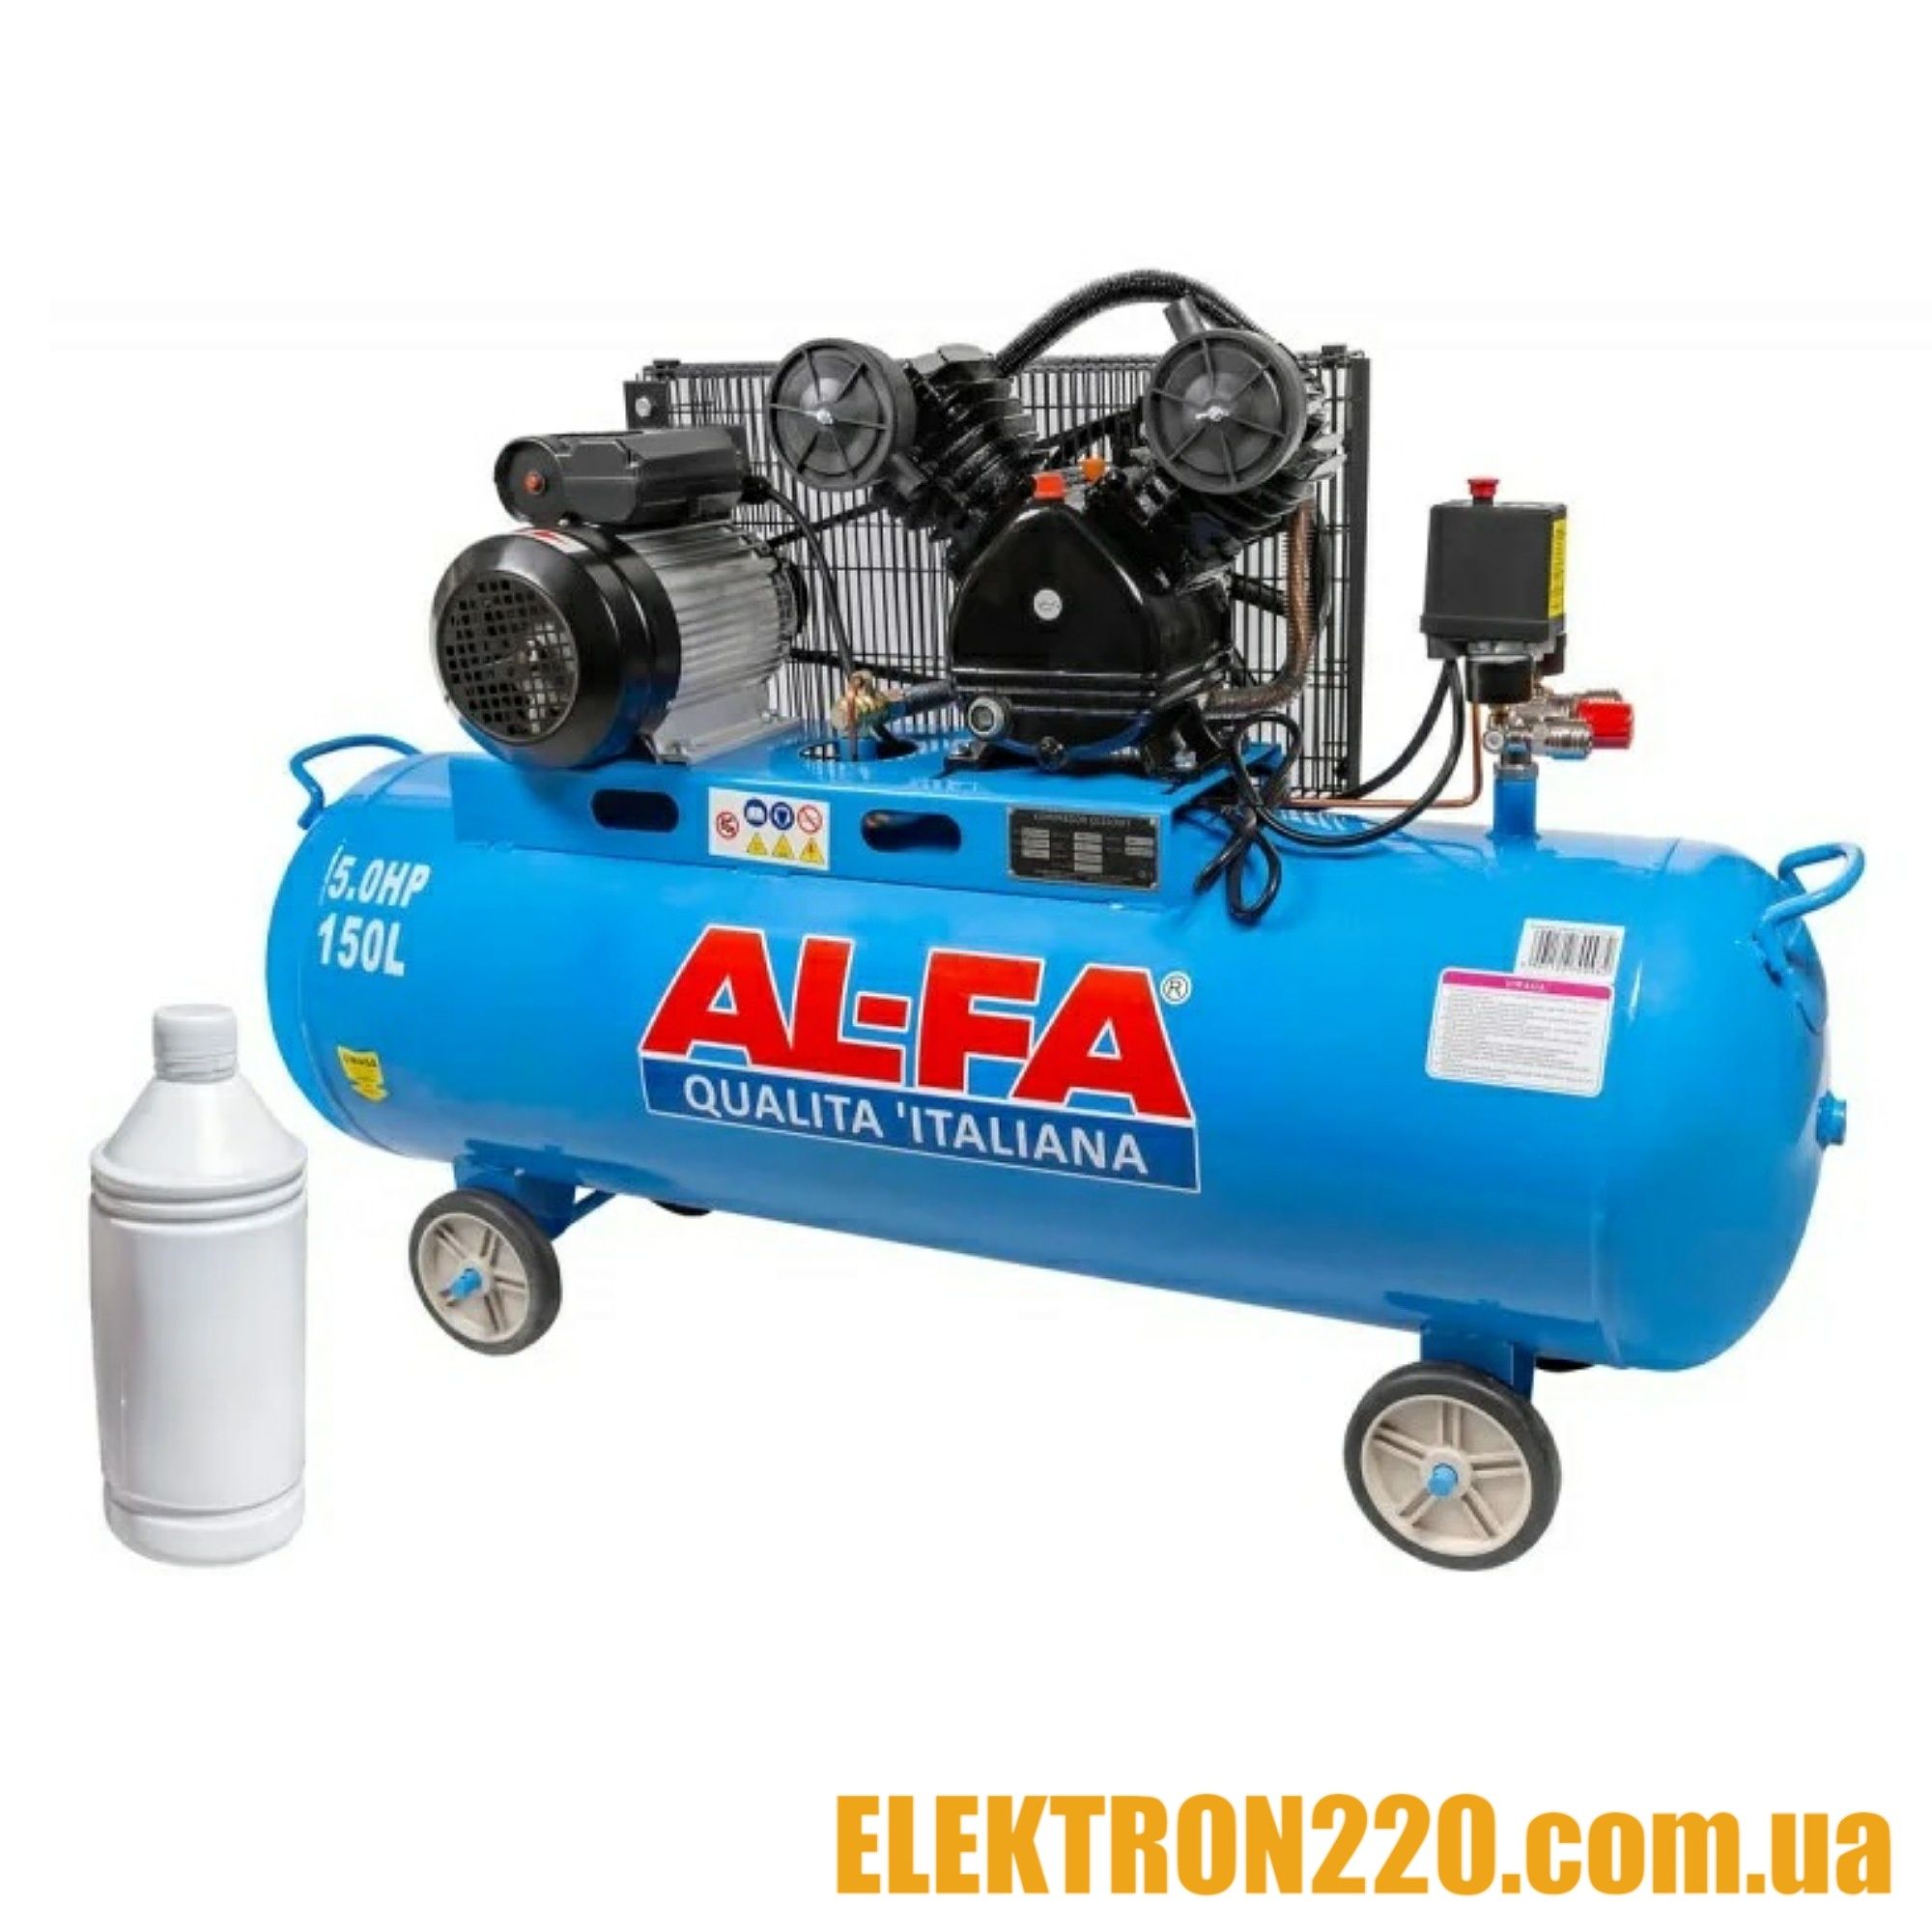 Компрессор AL-FA ALC100-2 ( 3.8 кВт , 660 л/мин) Гарантия 1 год!!!